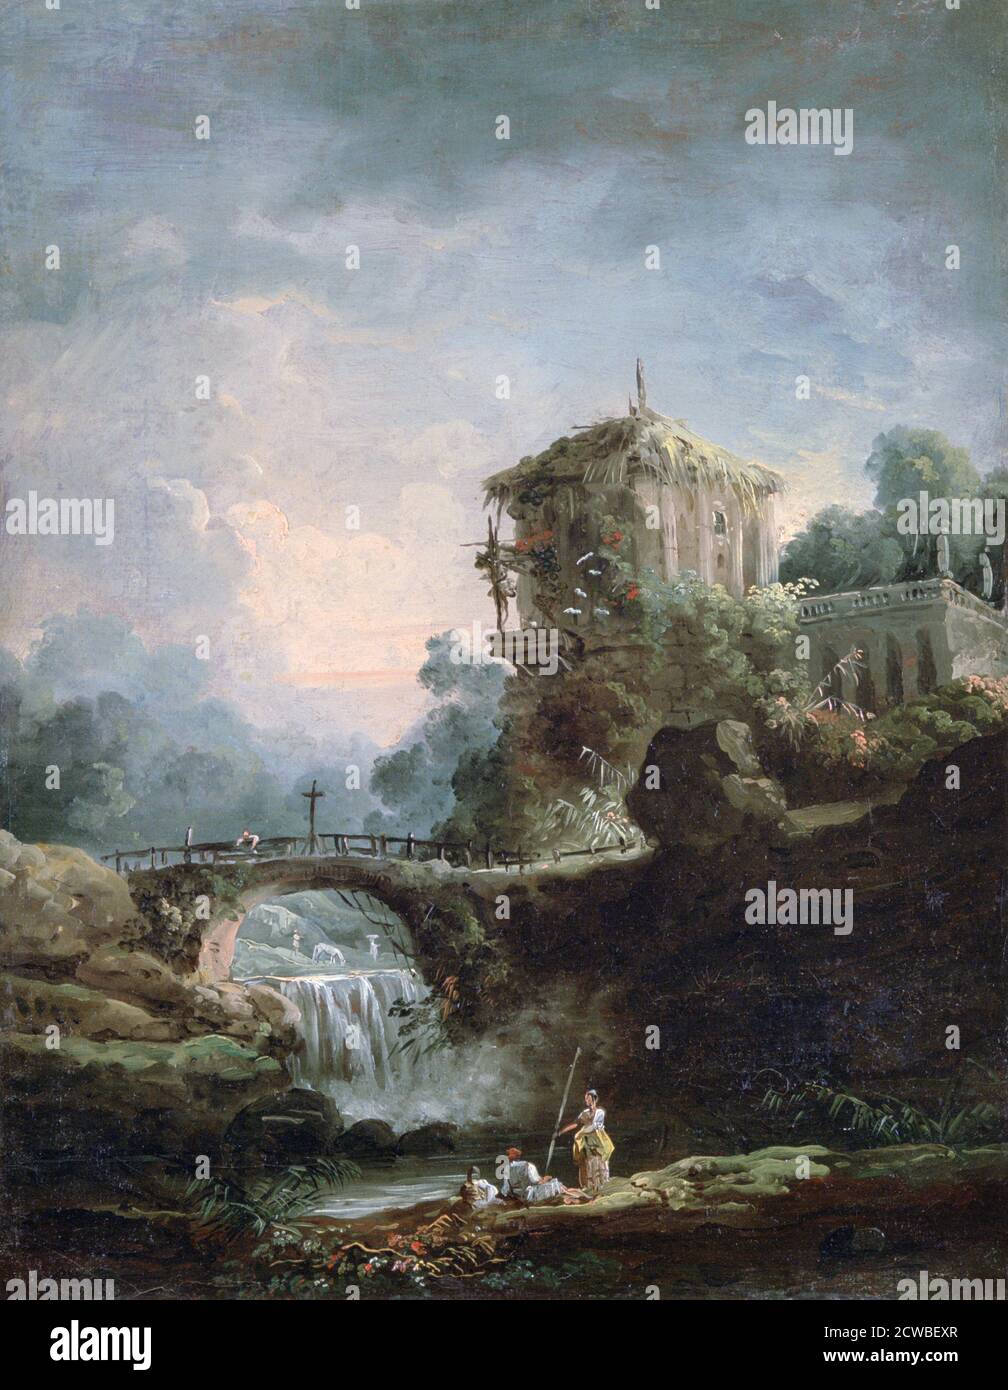 Paysage avec chute d'eau', c1750-1808, artiste: Hubert Robert. Hubert Robert (1733-1808) est un peintre français de l'ère Rococo. Banque D'Images